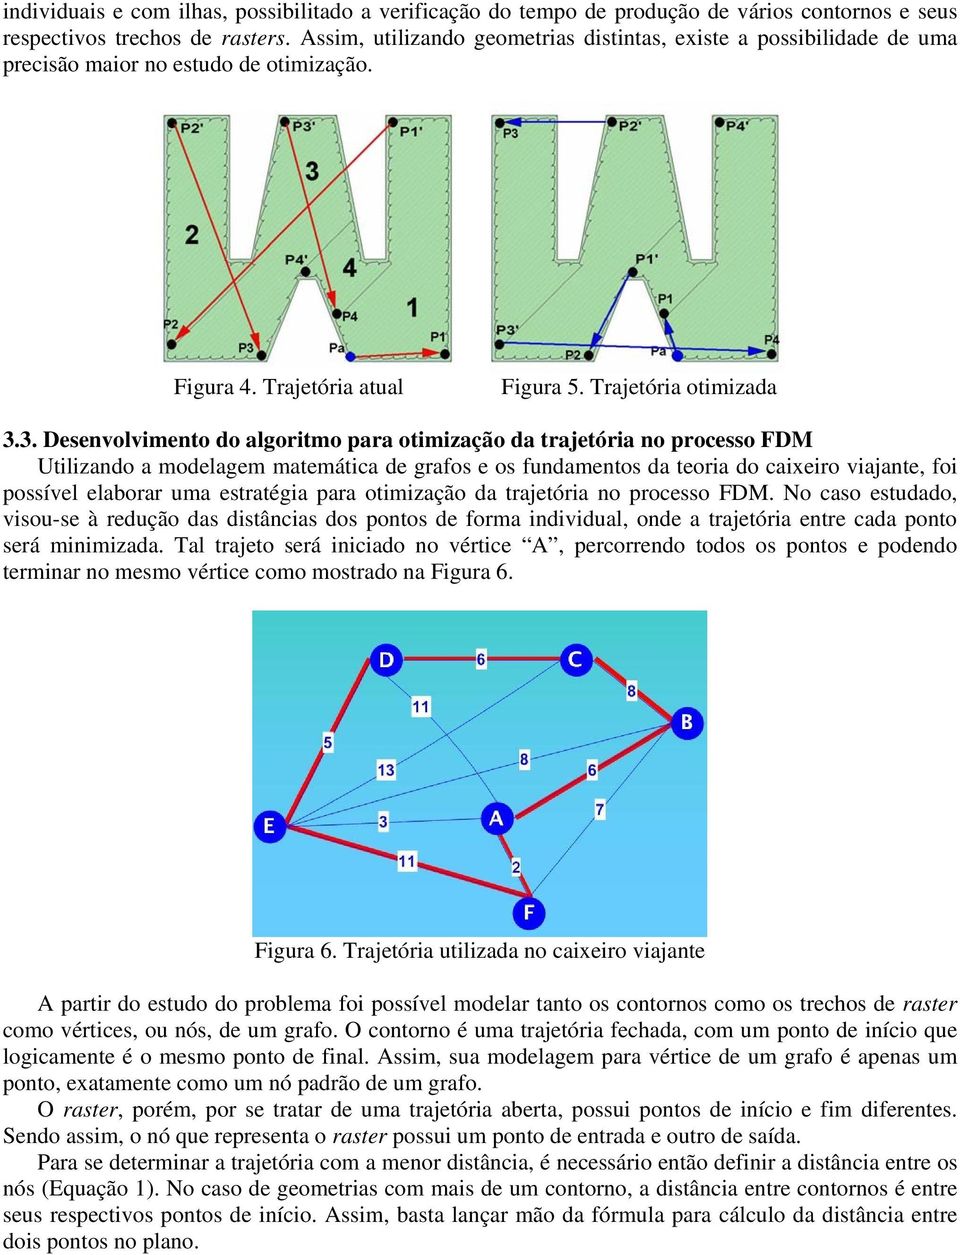 3. Desenvolvimento do algoritmo para otimização da trajetória no processo FDM Utilizando a modelagem matemática de grafos e os fundamentos da teoria do caixeiro viajante, foi possível elaborar uma